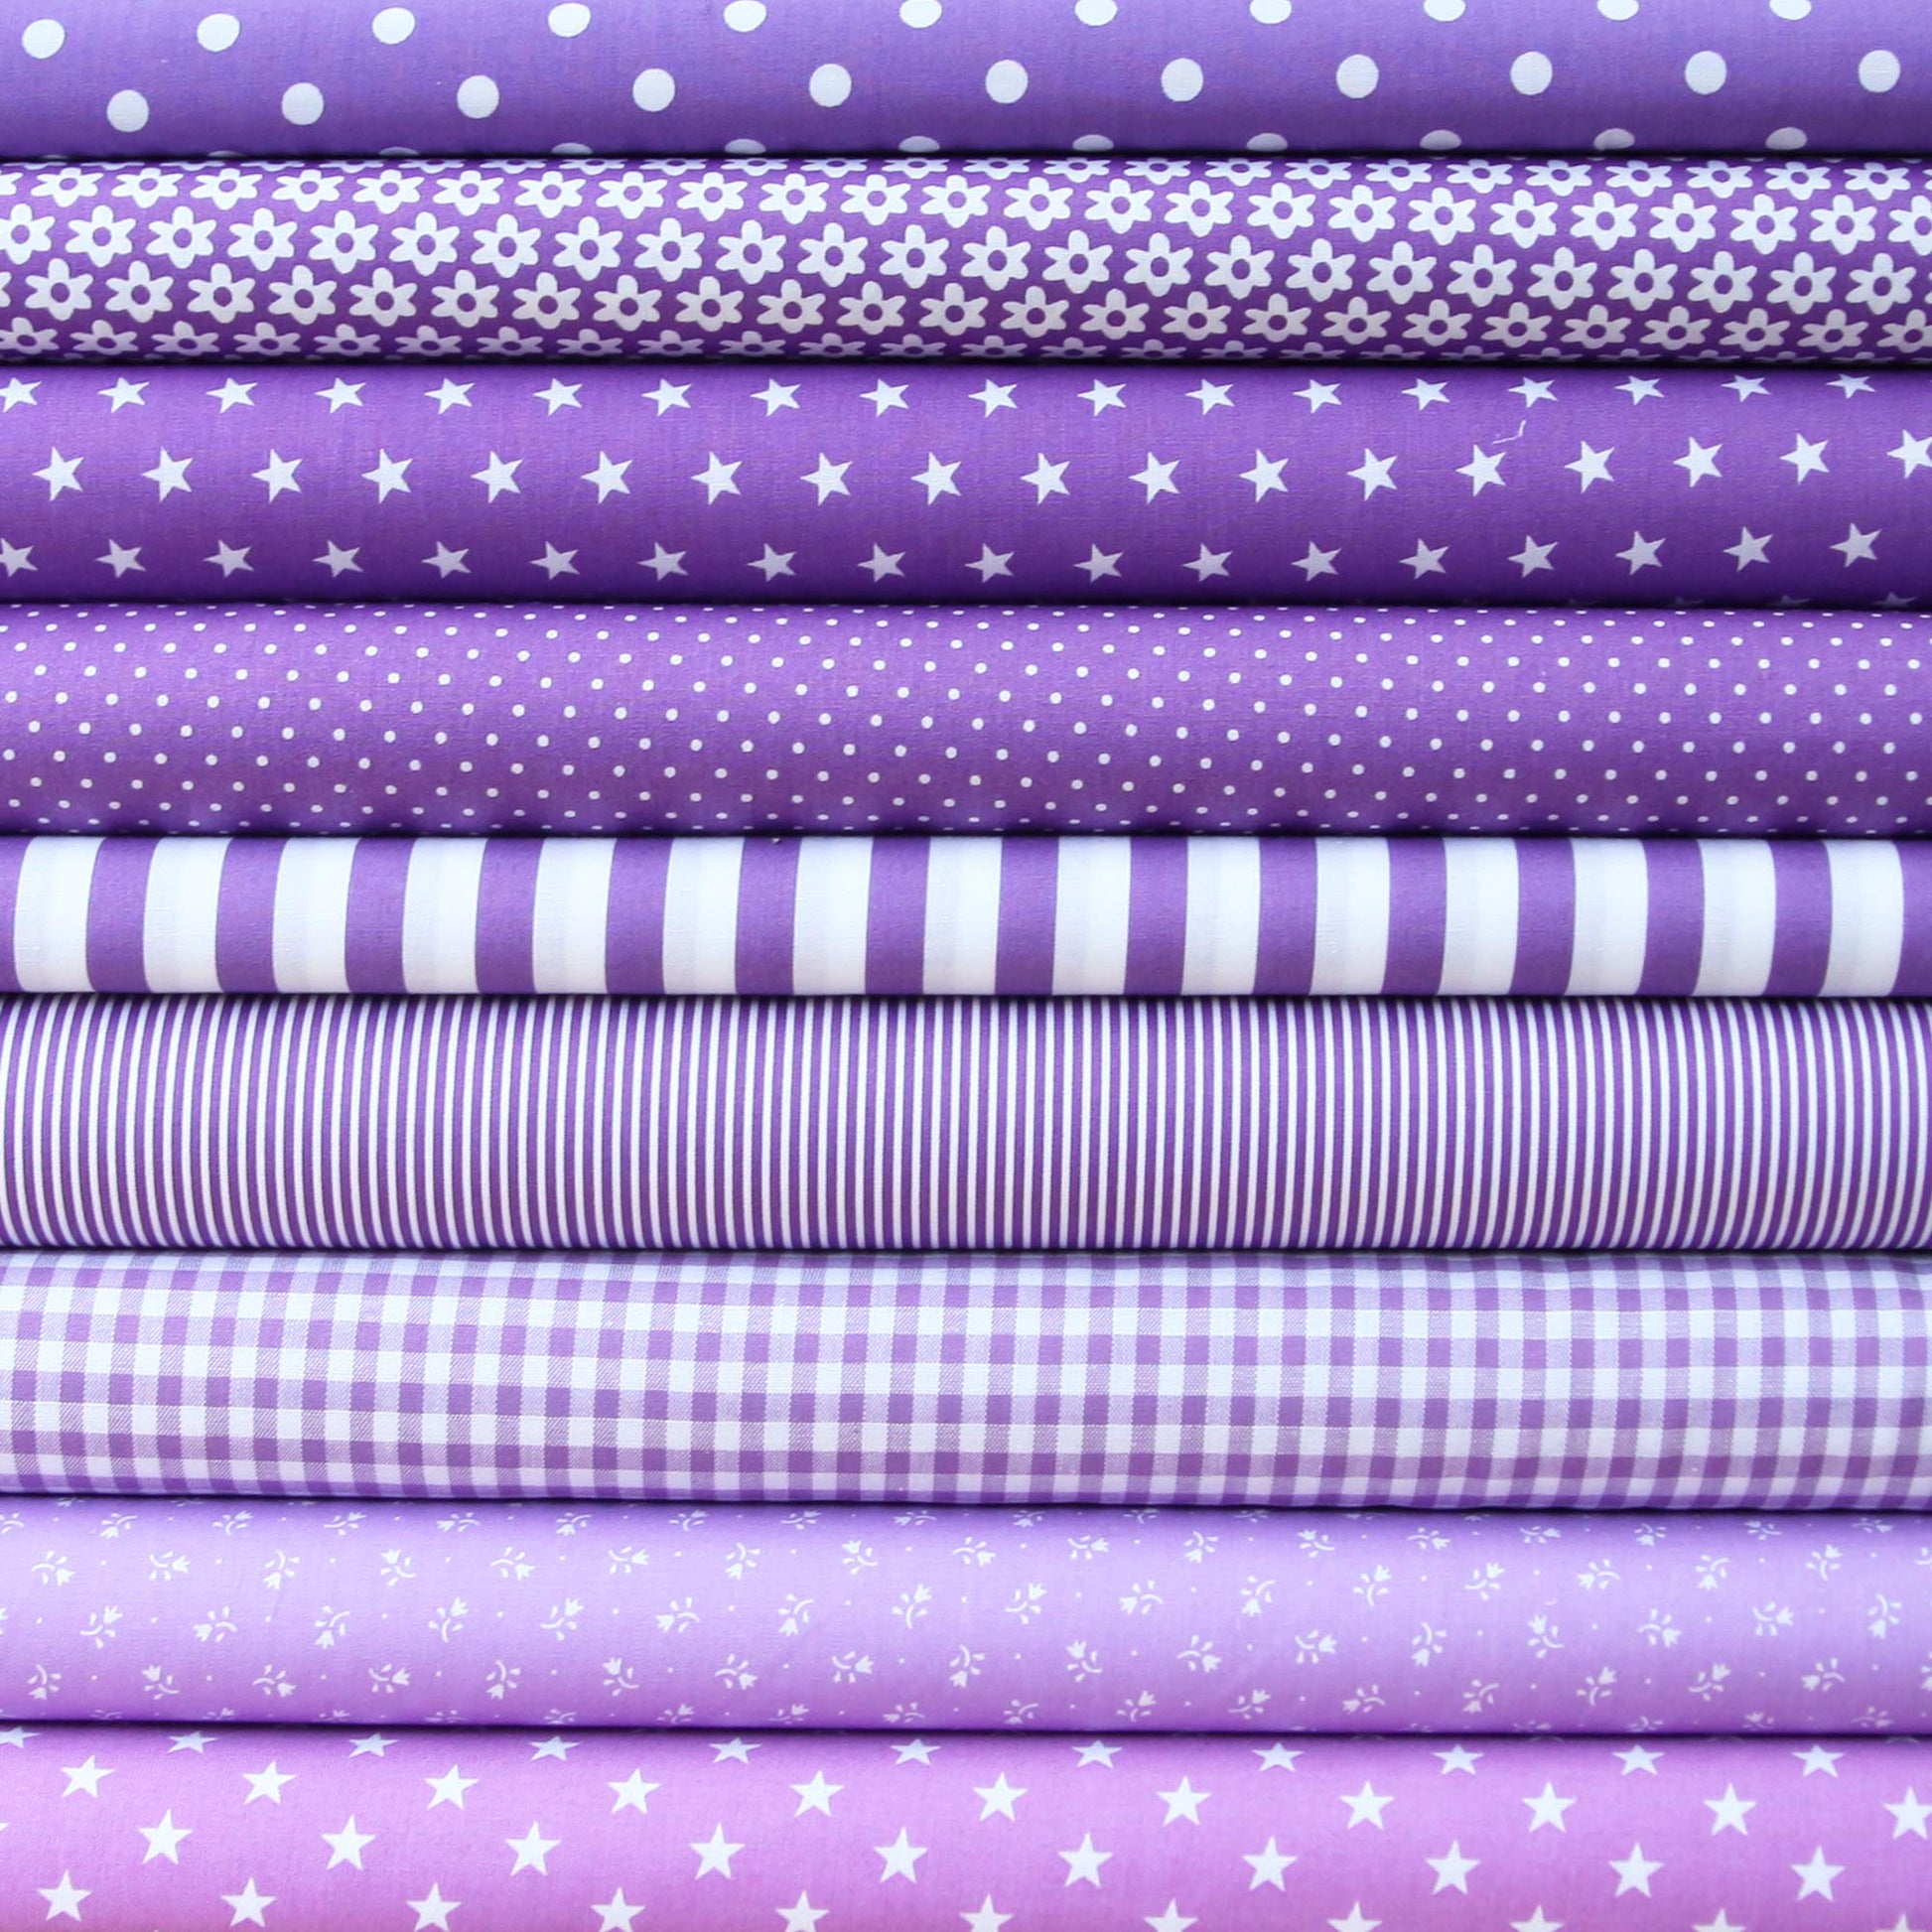 Baumwollstoff mit breiten Linien / Popeline " 1,0 cm breite Streifen auf violett" - Patchwork 100% Baumwolle lila - Stoffe Kudellino